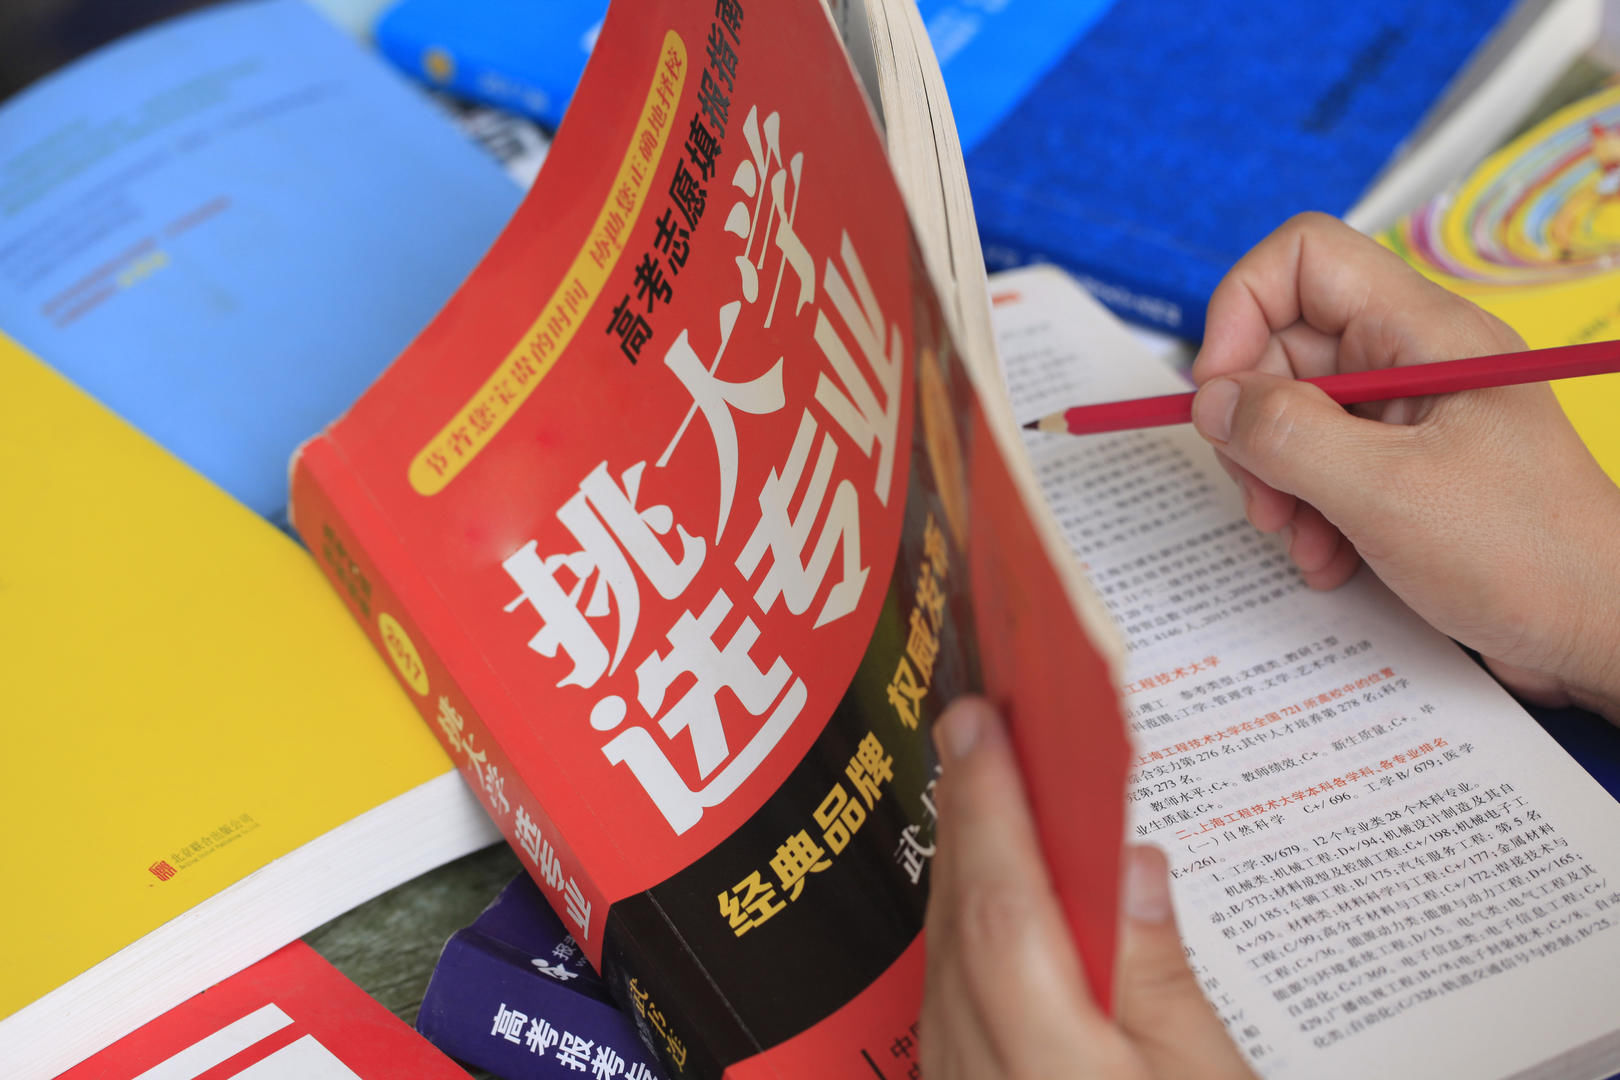 汪垠涛|评论丨“专业比学校重要”，丁磊的高考志愿填报建议中肯吗？